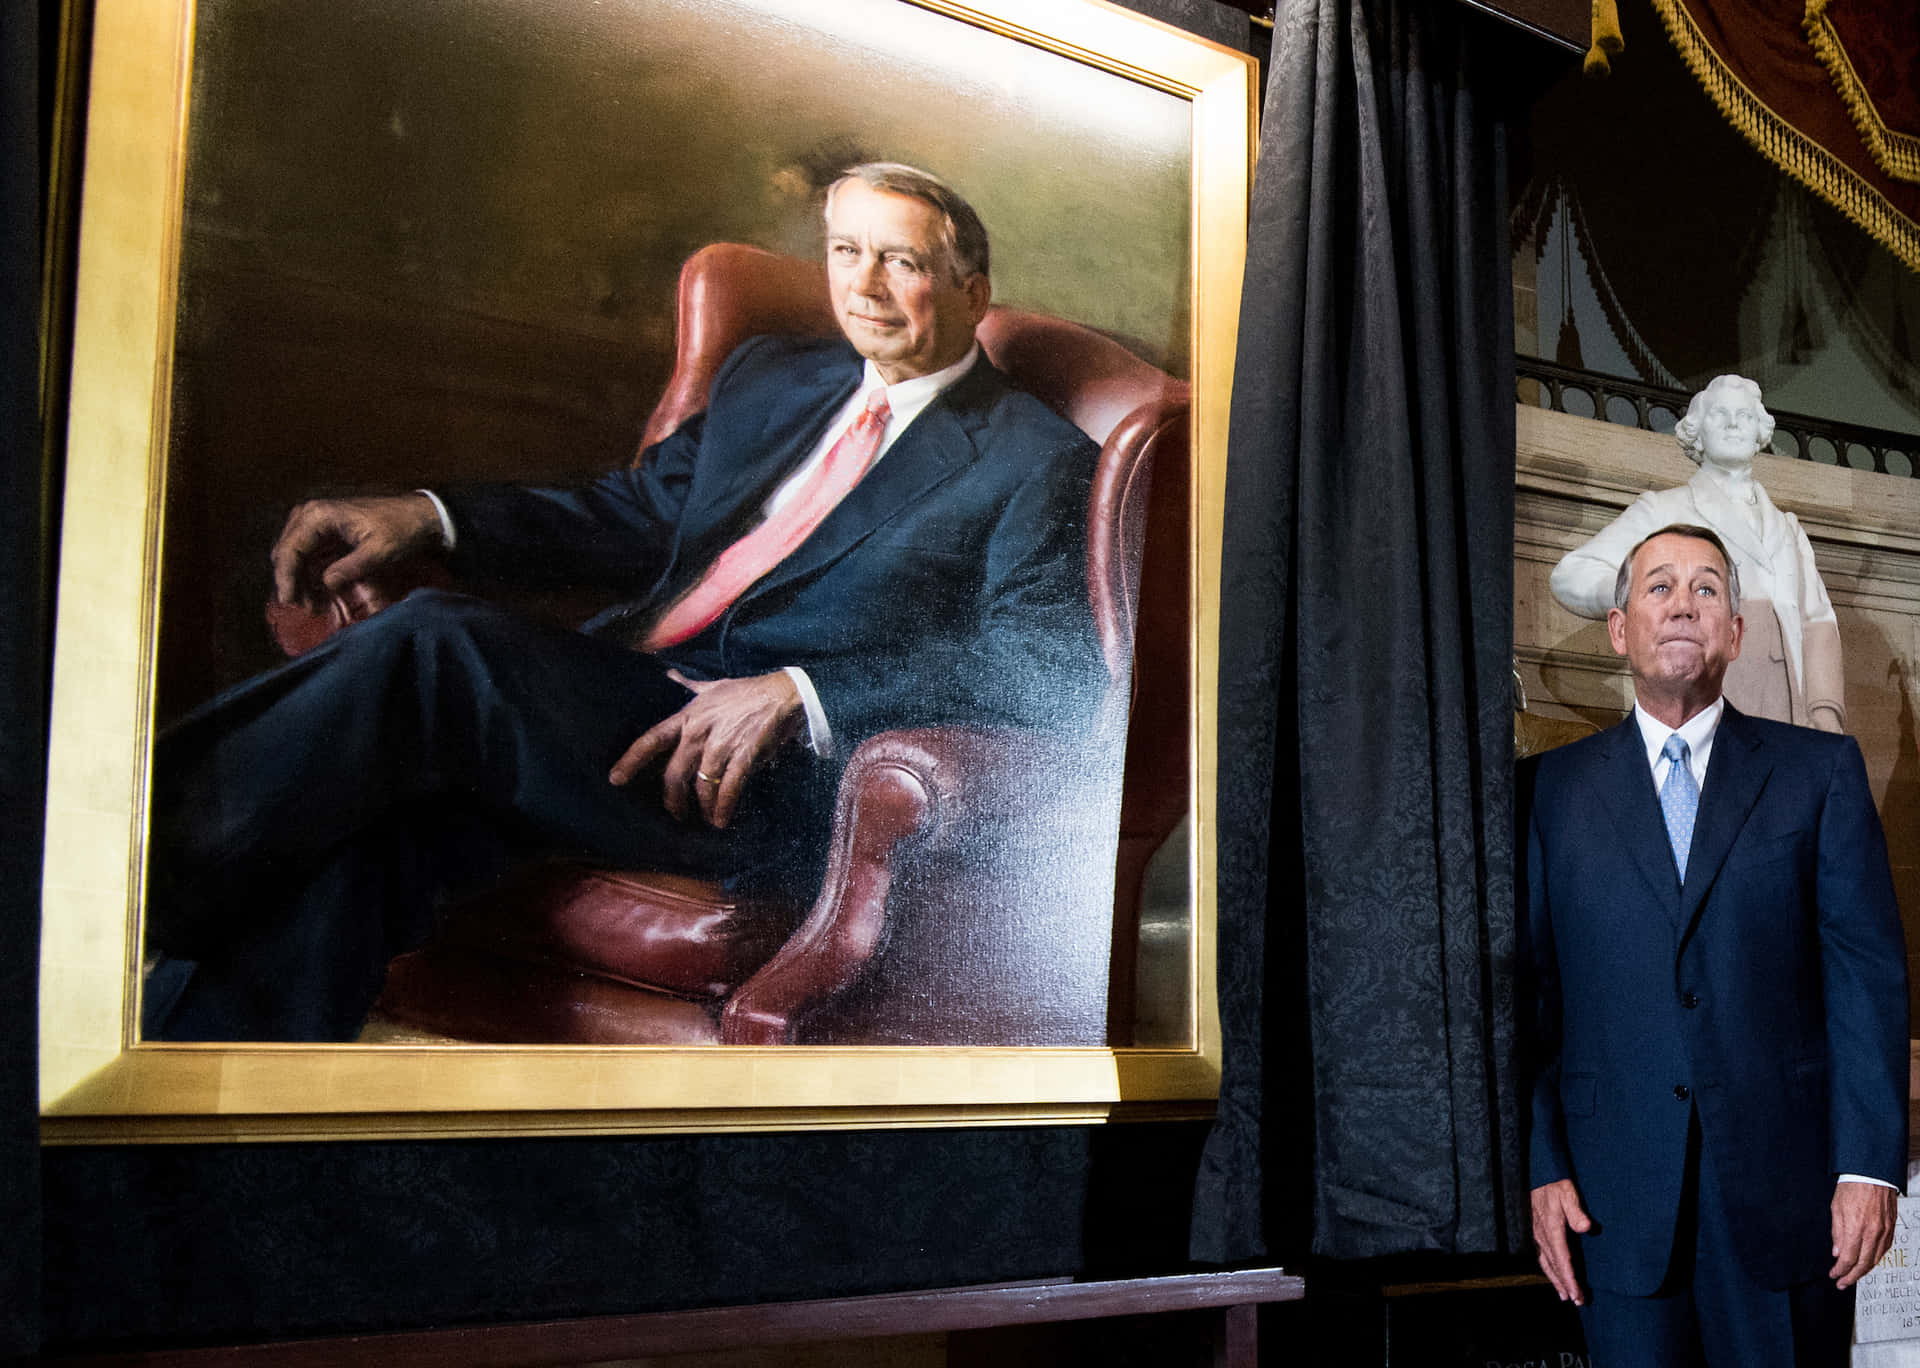 Portrait of John Boehner, former Speaker of the United States House of Representatives Wallpaper